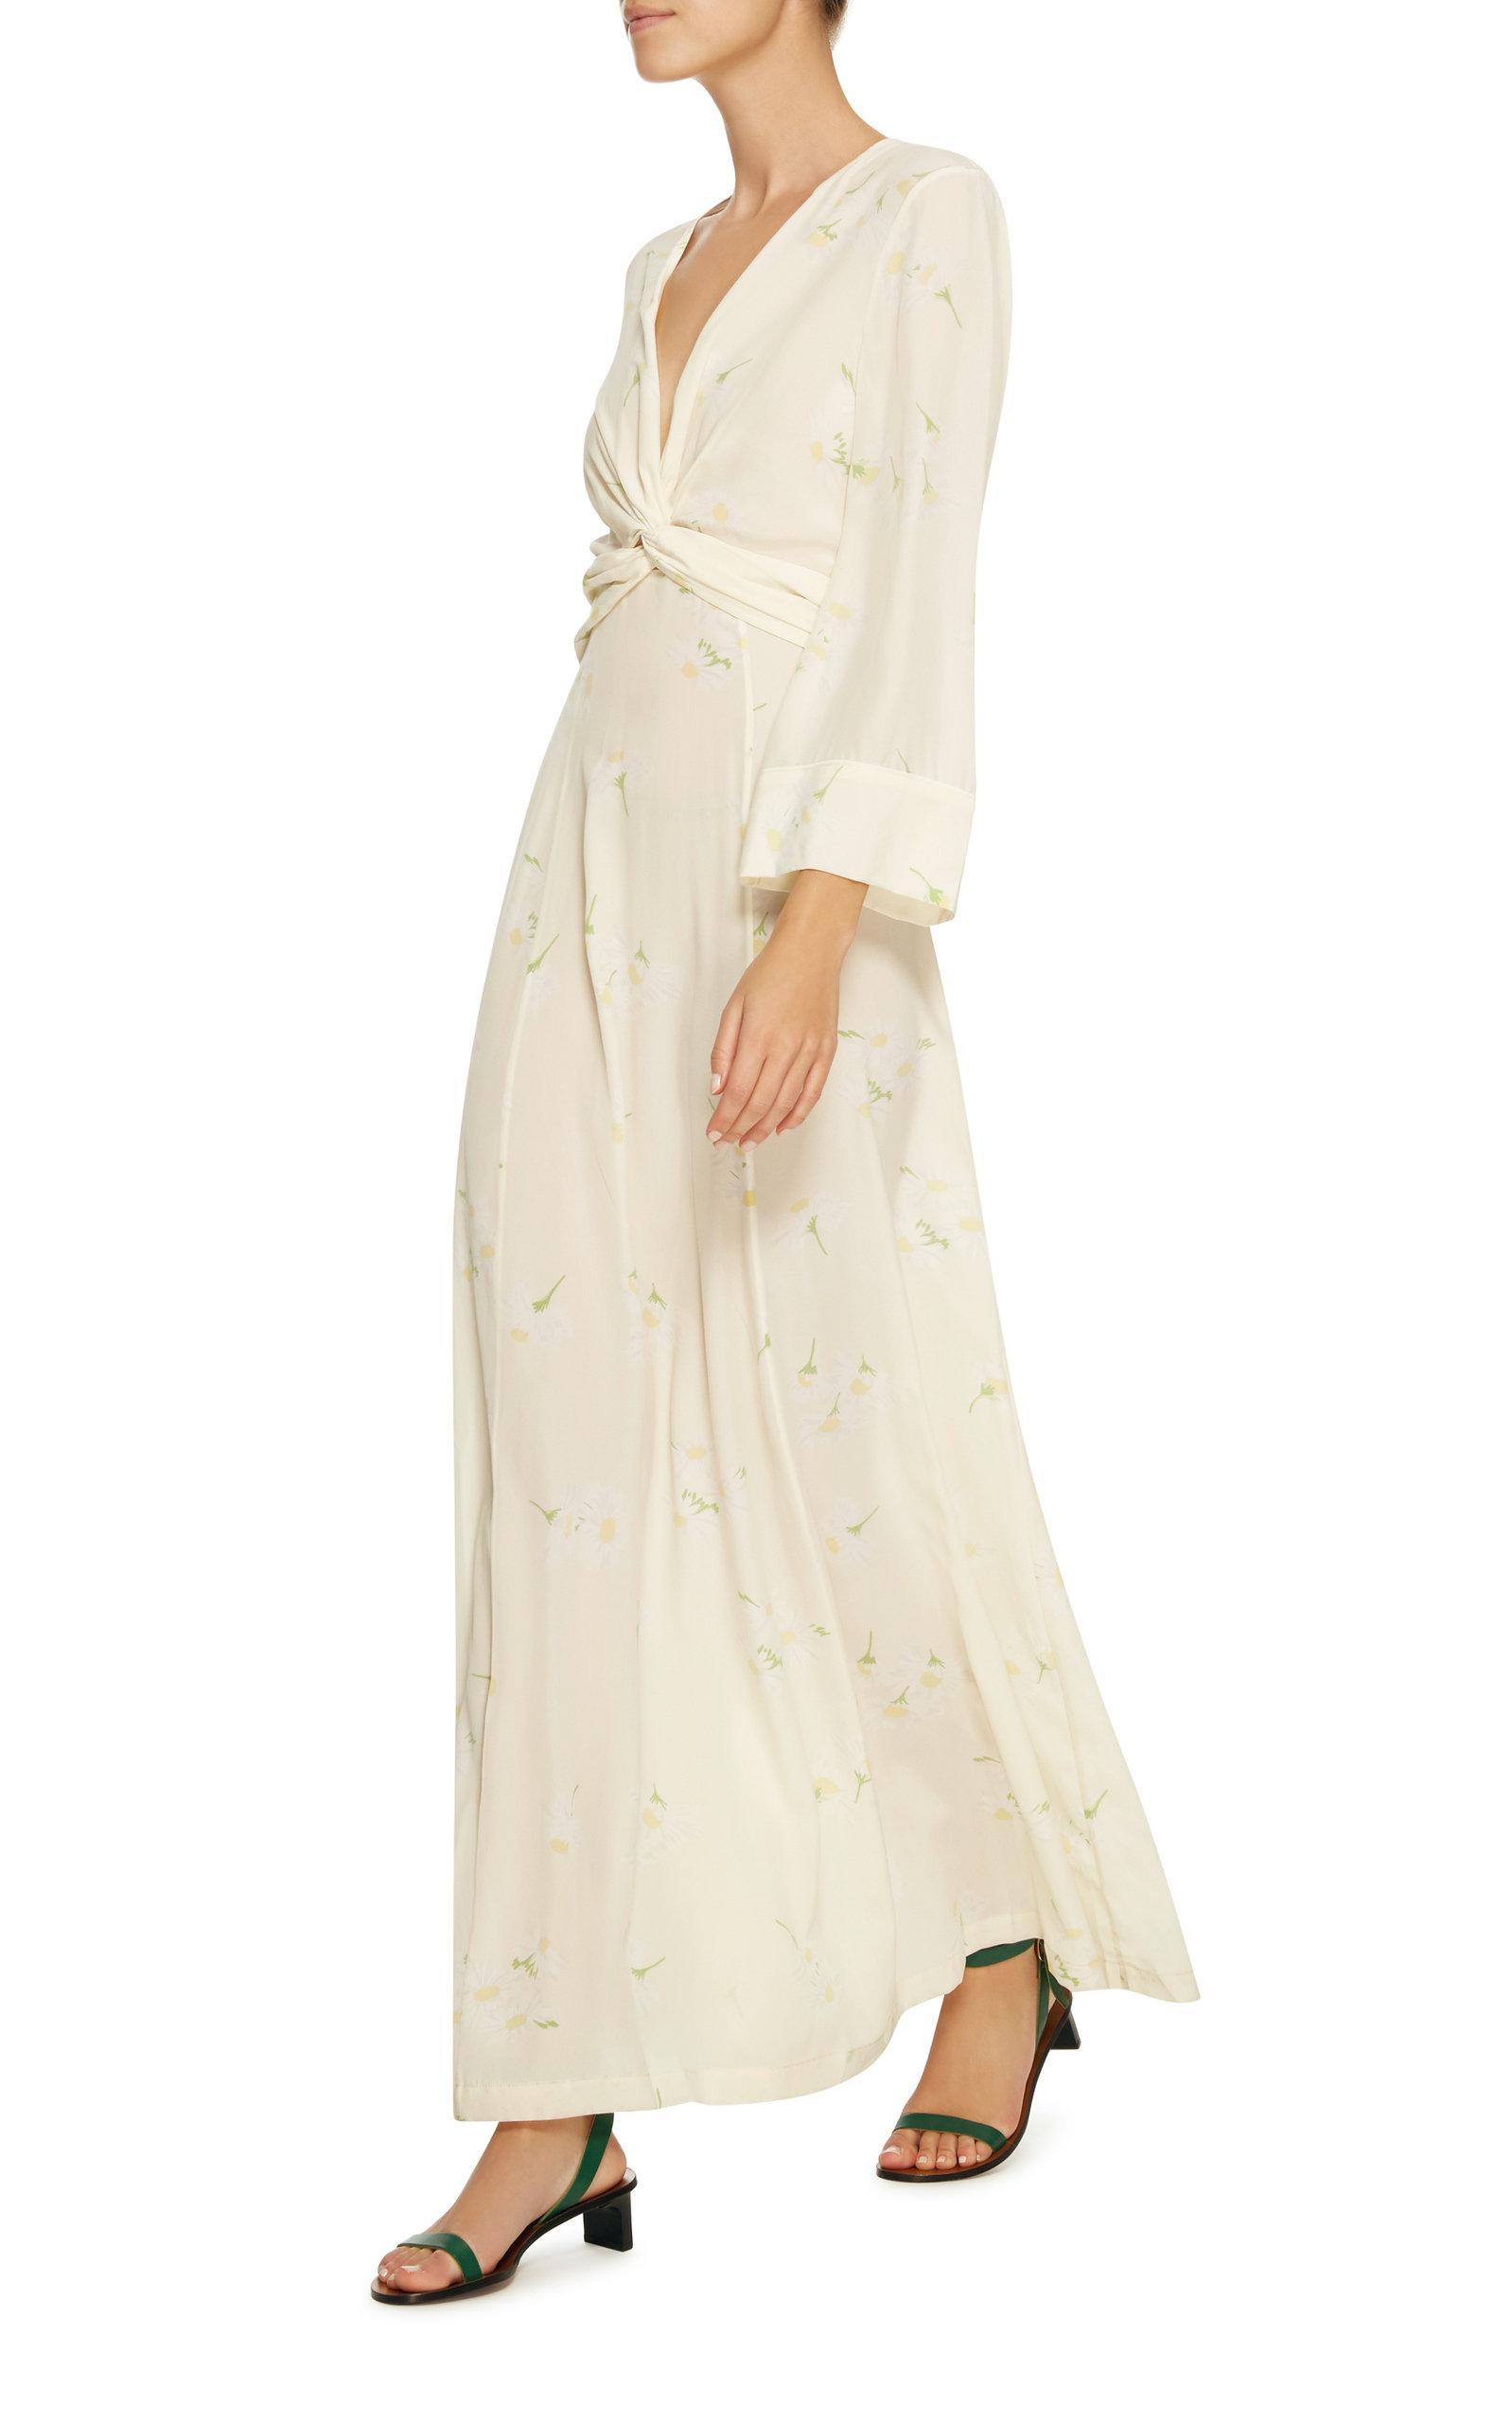 Ganni Nolana Tie Front Floral Silk Maxi Dress in White - Lyst